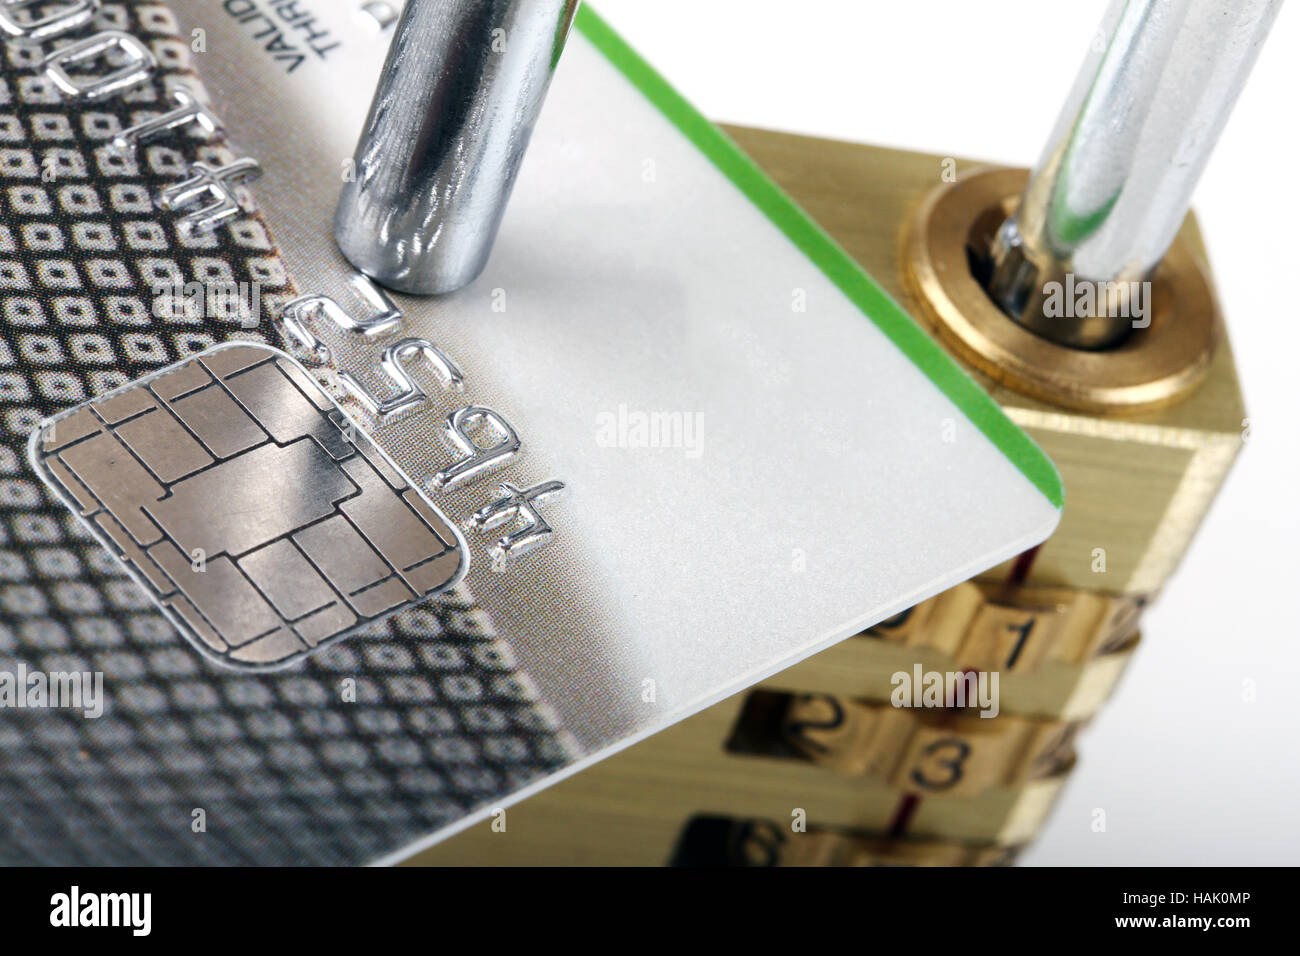 Close up de carte de crédit et d'un cadenas - Paiement sécurisé concept Banque D'Images